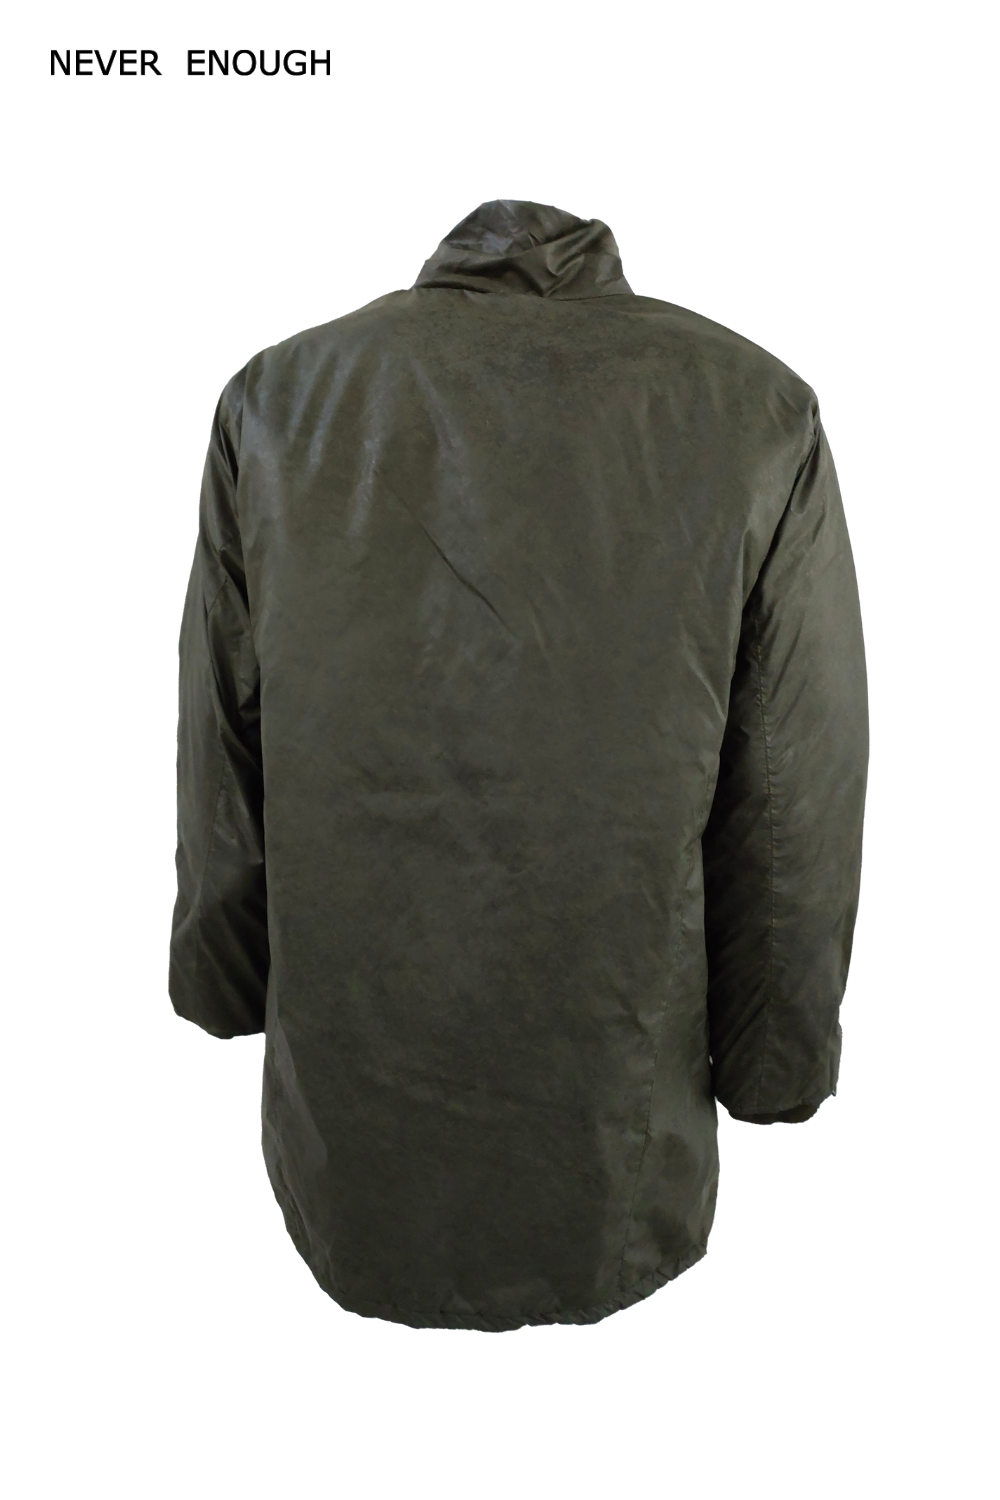 Man jacket MJA003